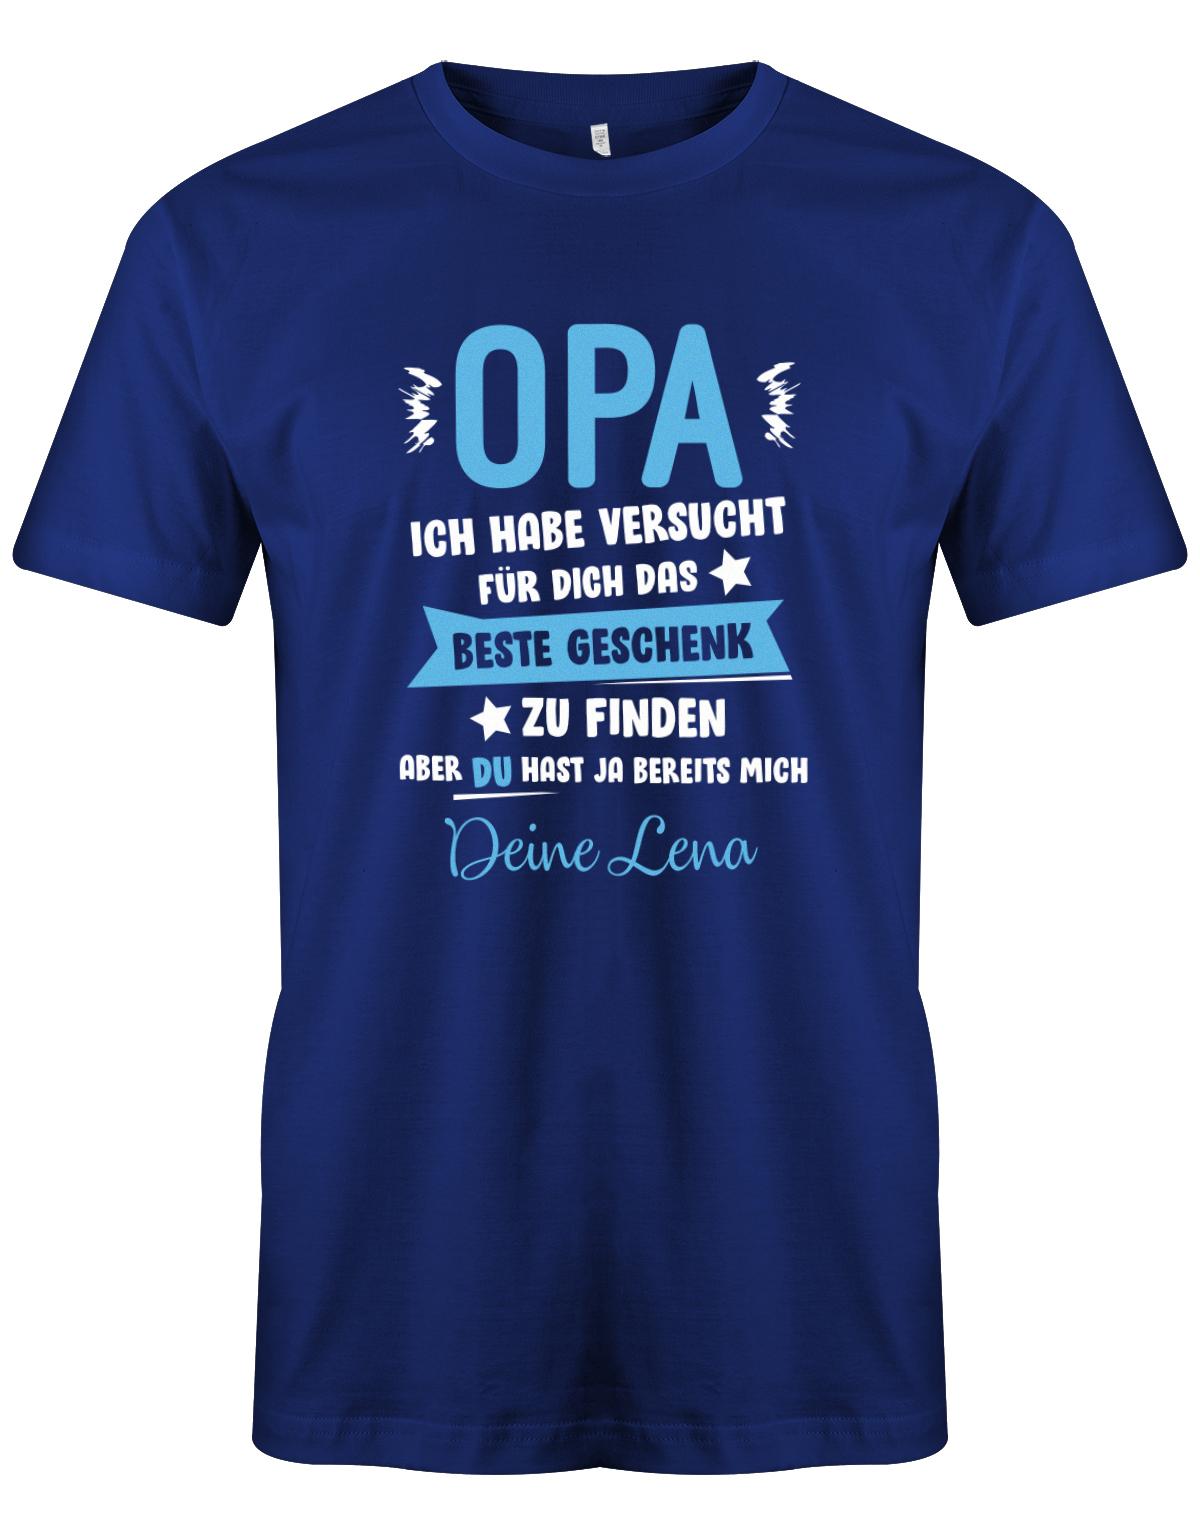 Opa Shirt personalisiert - Opa ich habe versucht, das beste Geschenk für dich zu finden, aber du hast ja bereits mich. Name vom Enkel.  Royalblau